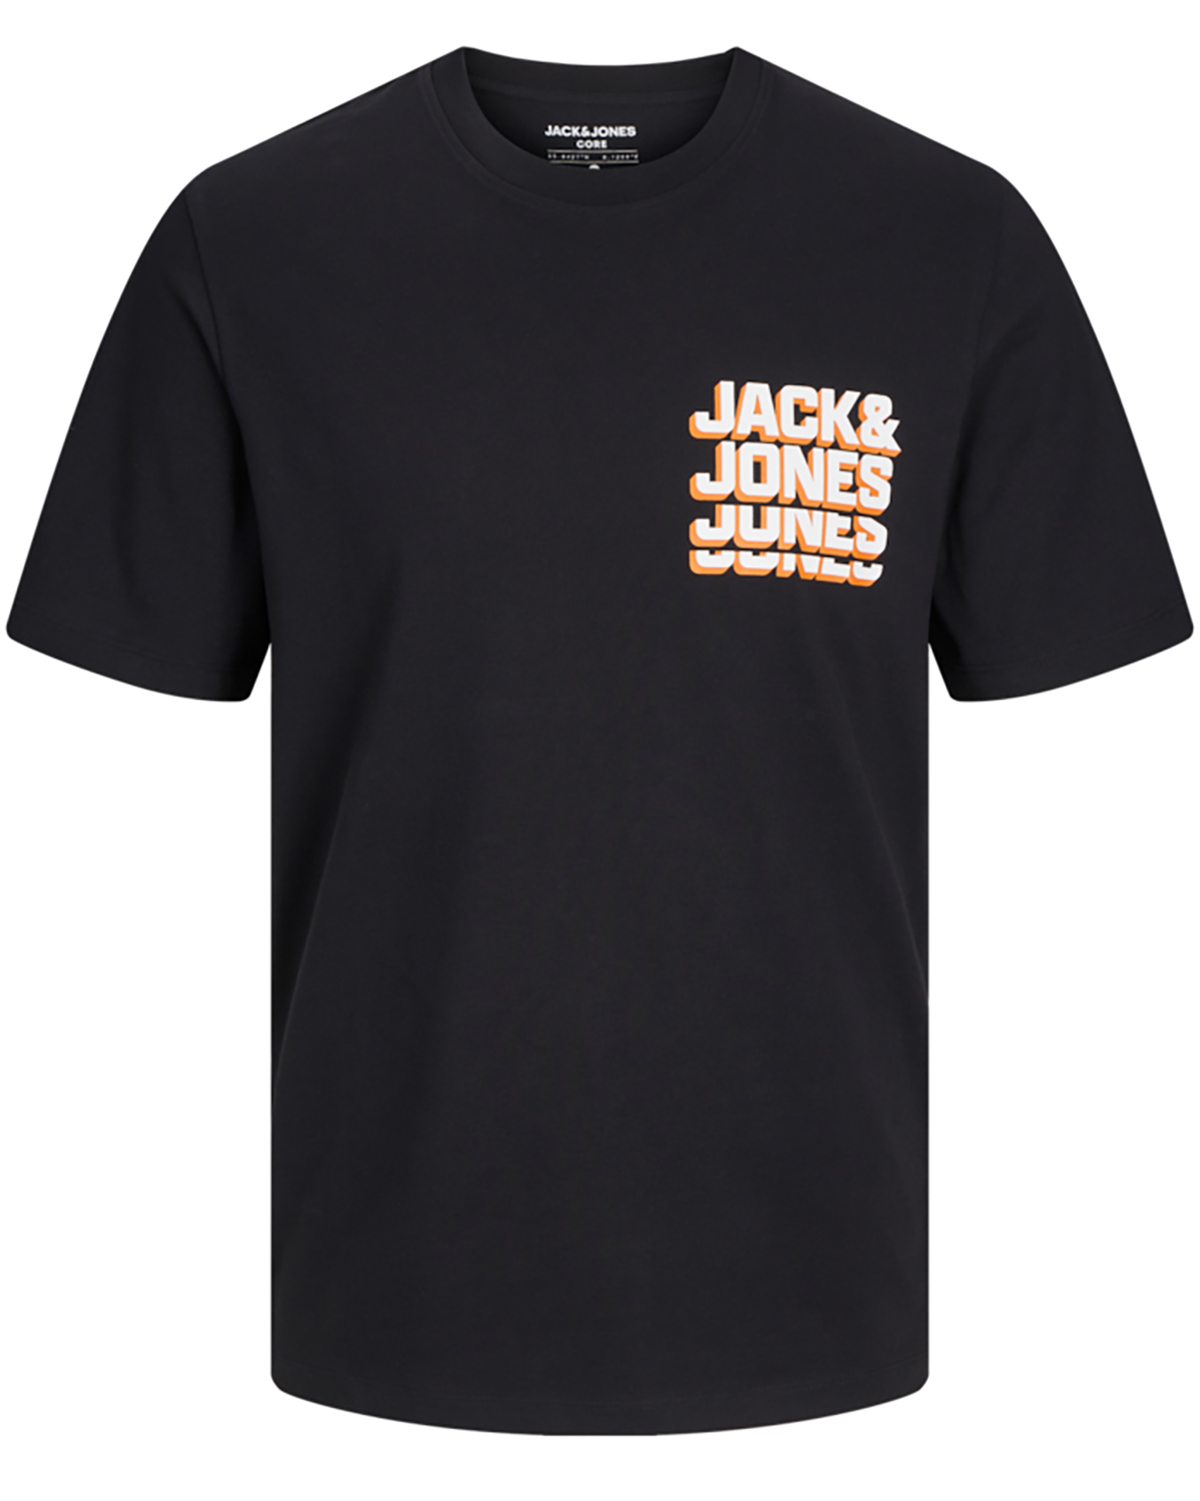 Se Jack & Jones t-shirt s/s, Script tee, sort - 182,M+,M hos Umame.dk